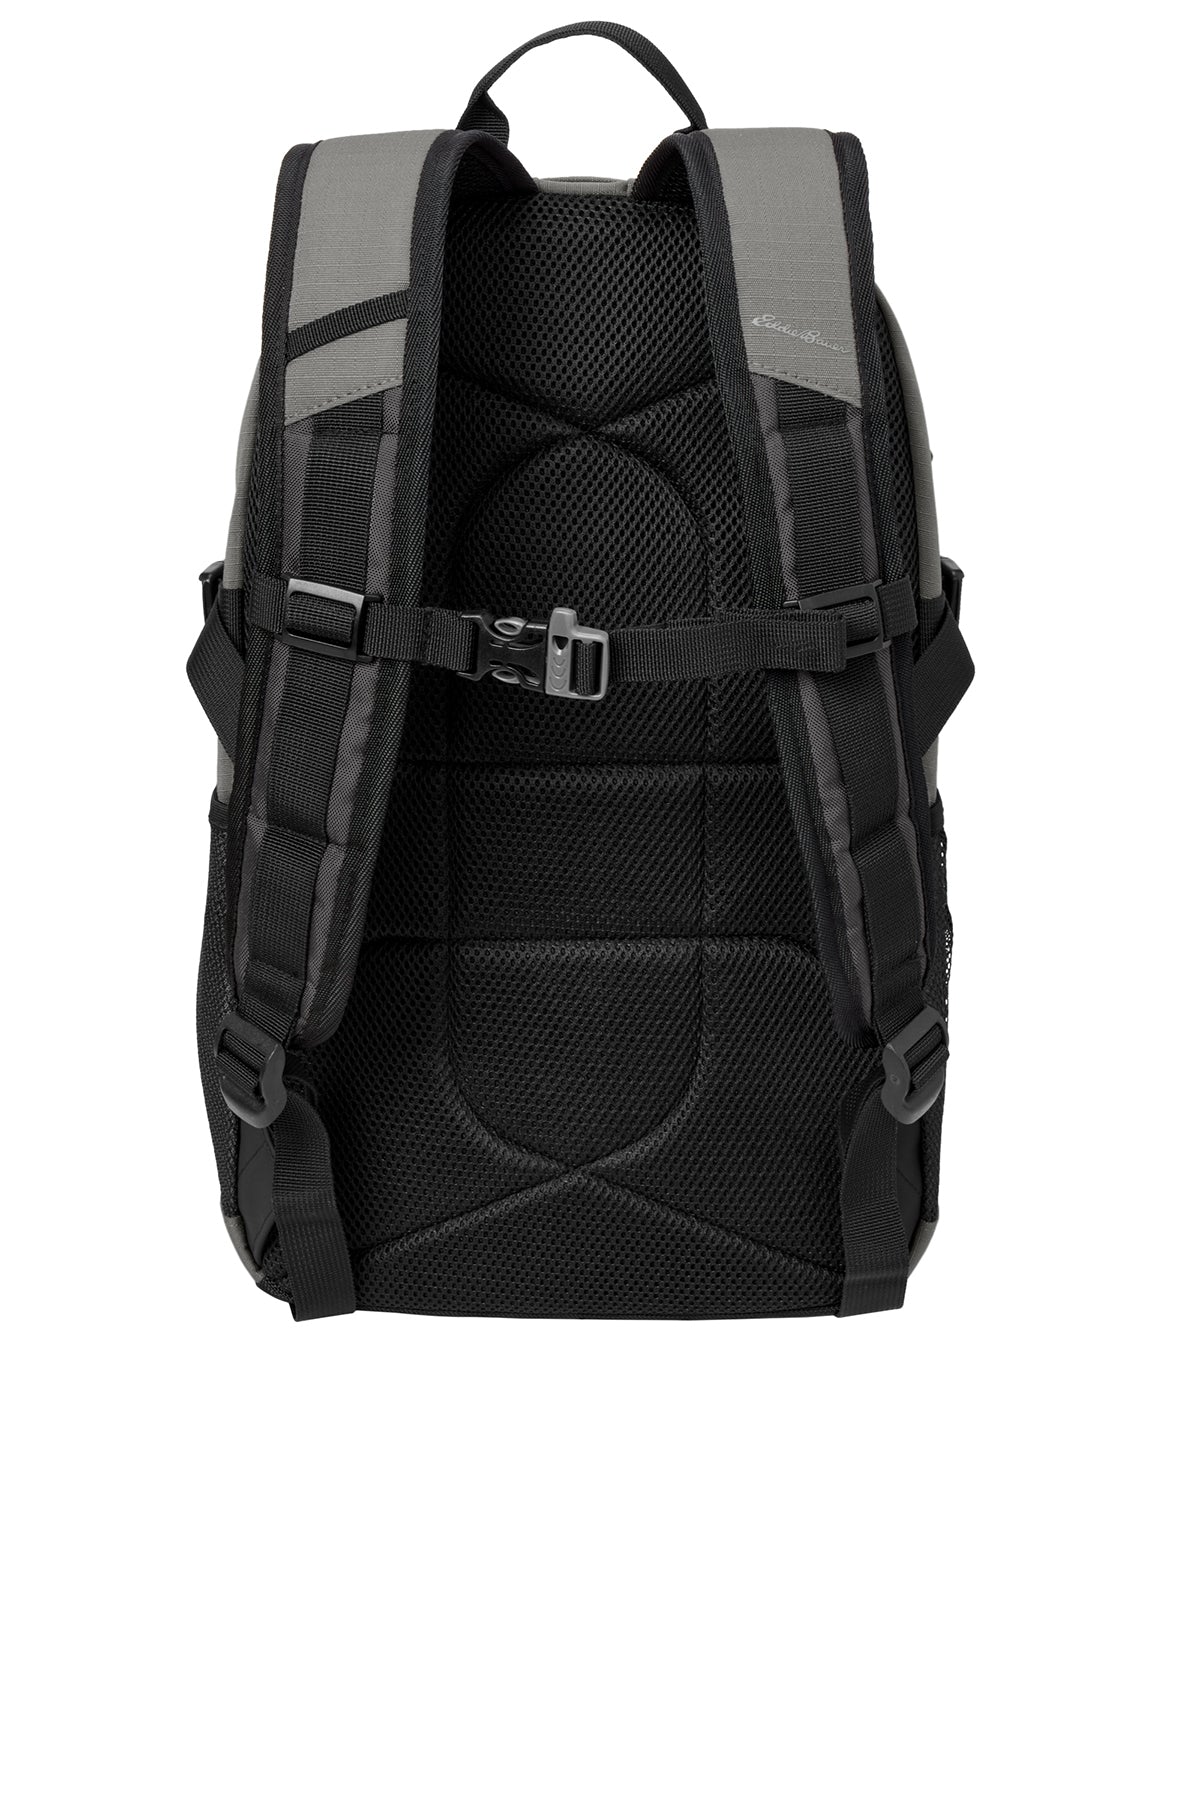 Eddie Bauer Custom Ripstop Backpacks, Pewter Grey